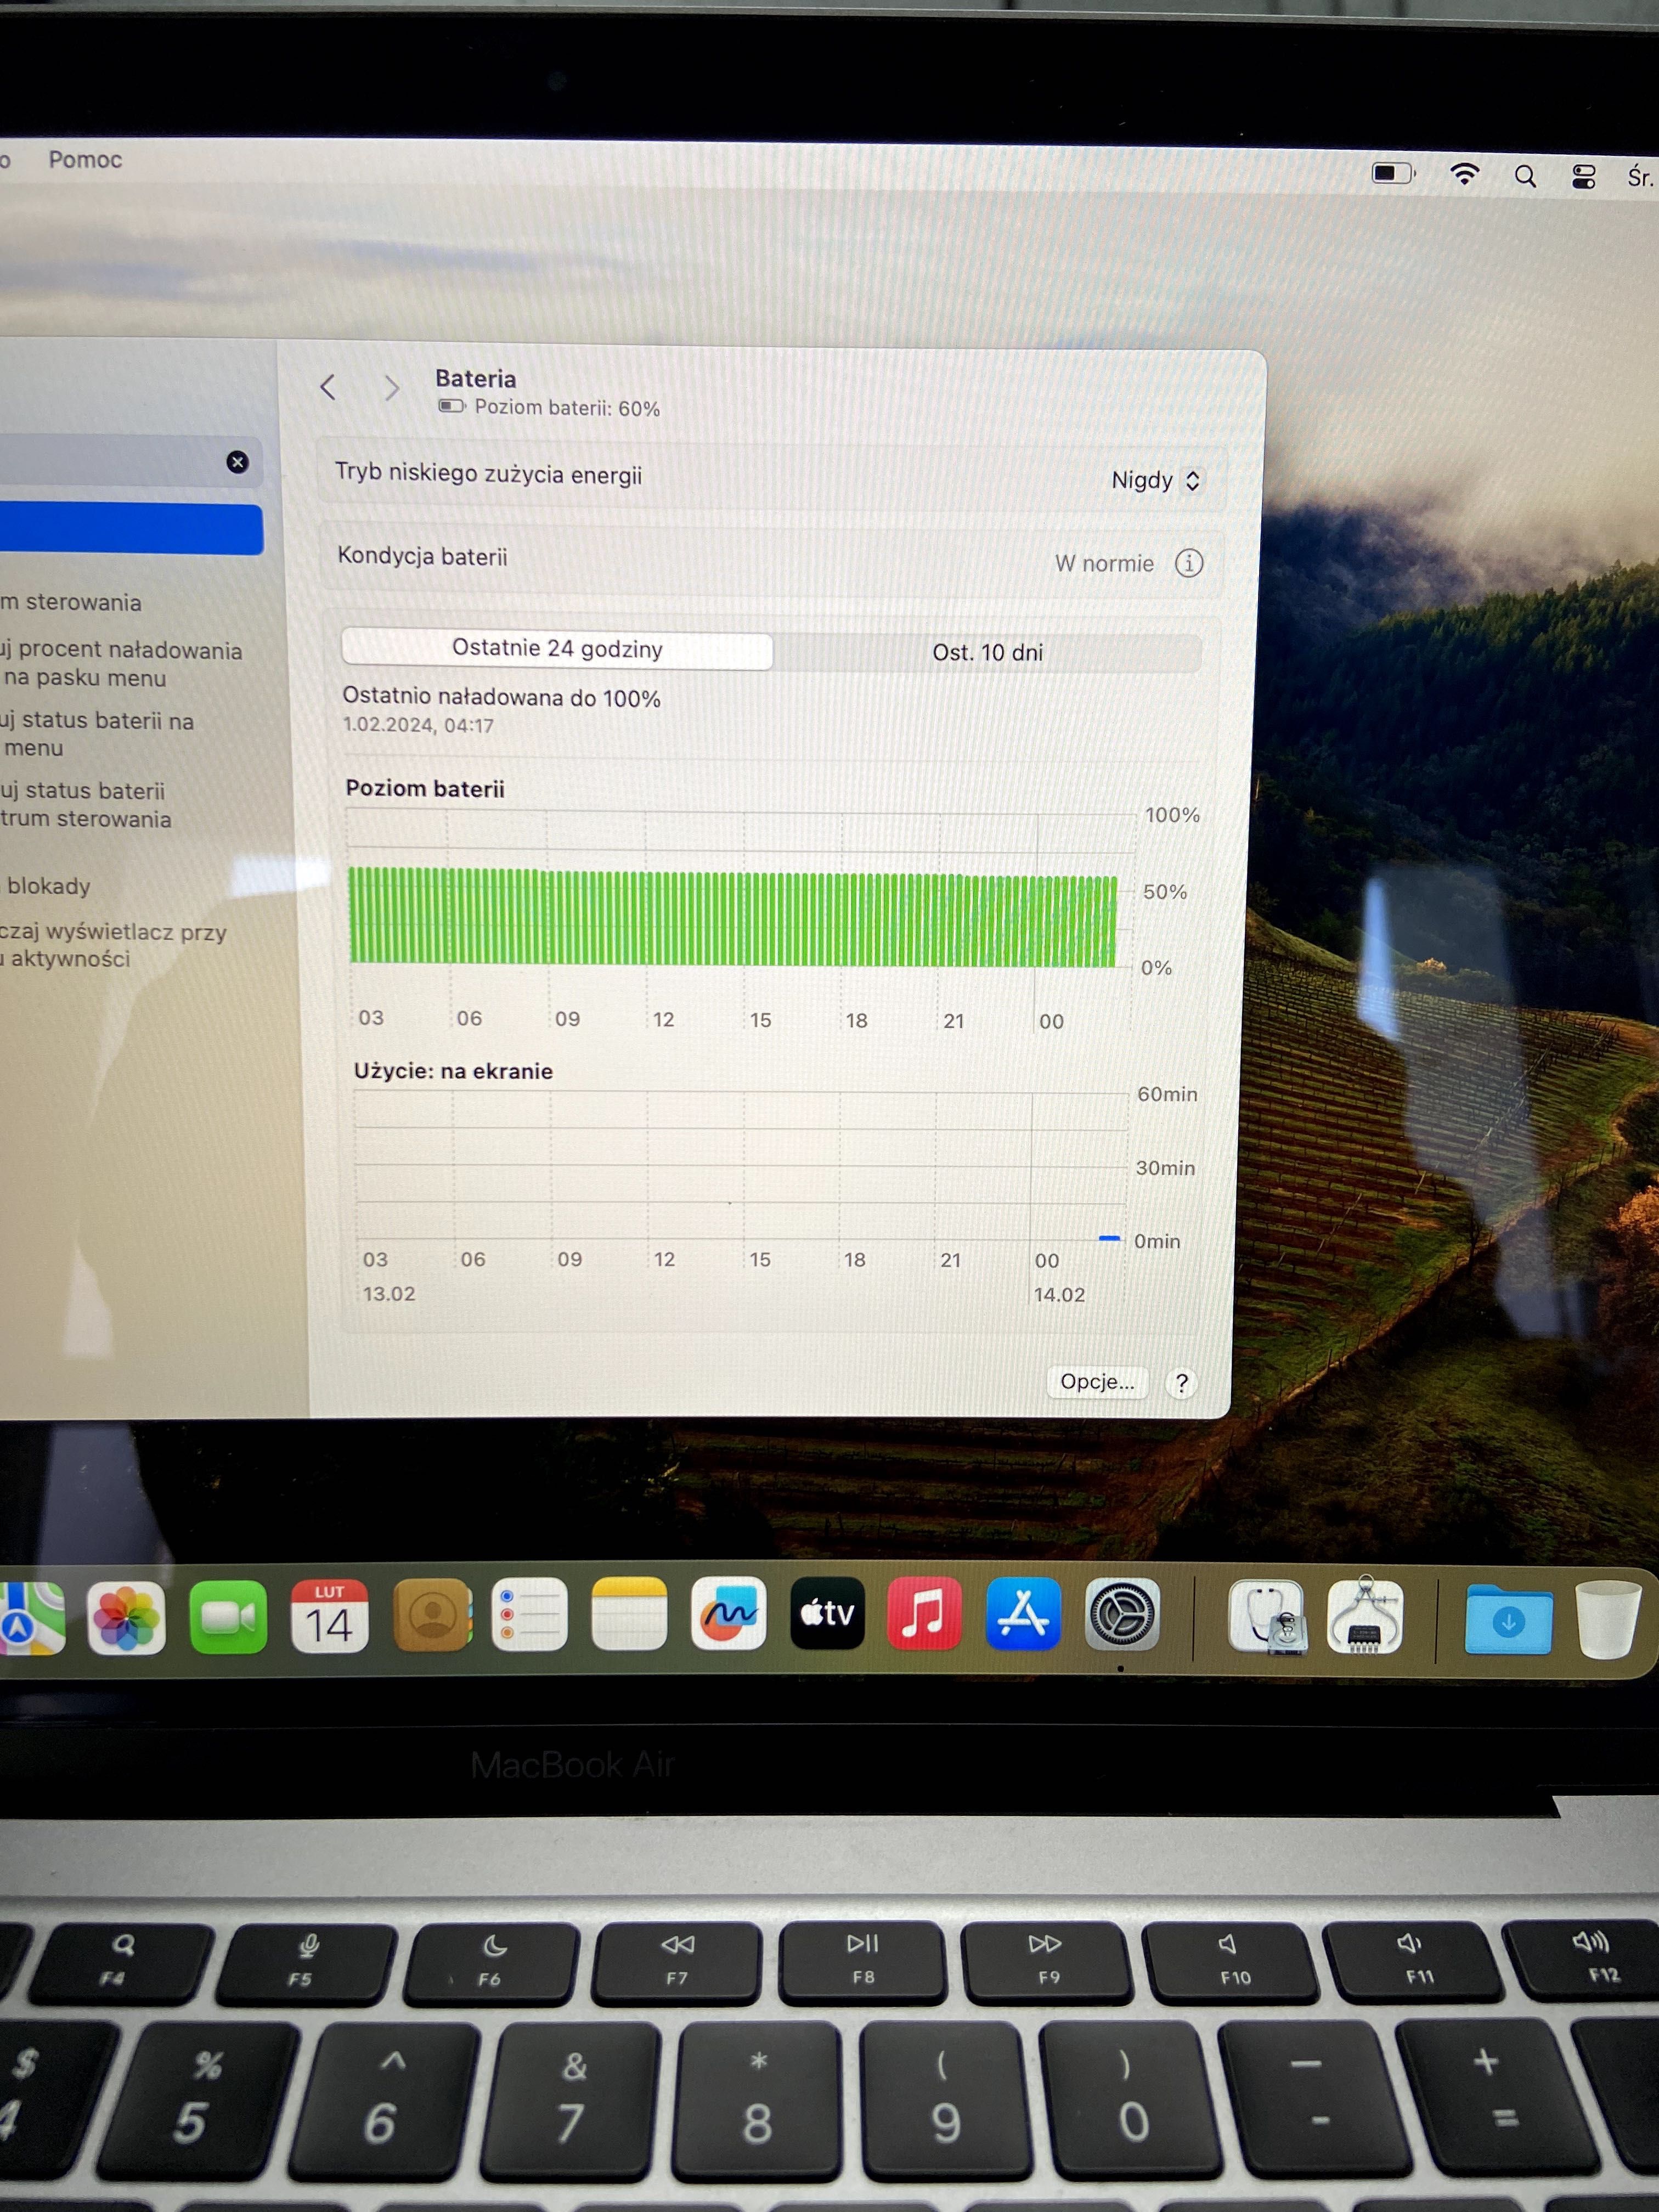 MacBook Air M1 - 16GB RAM/256 GB/ Idealny do pracy i codziennych zadań